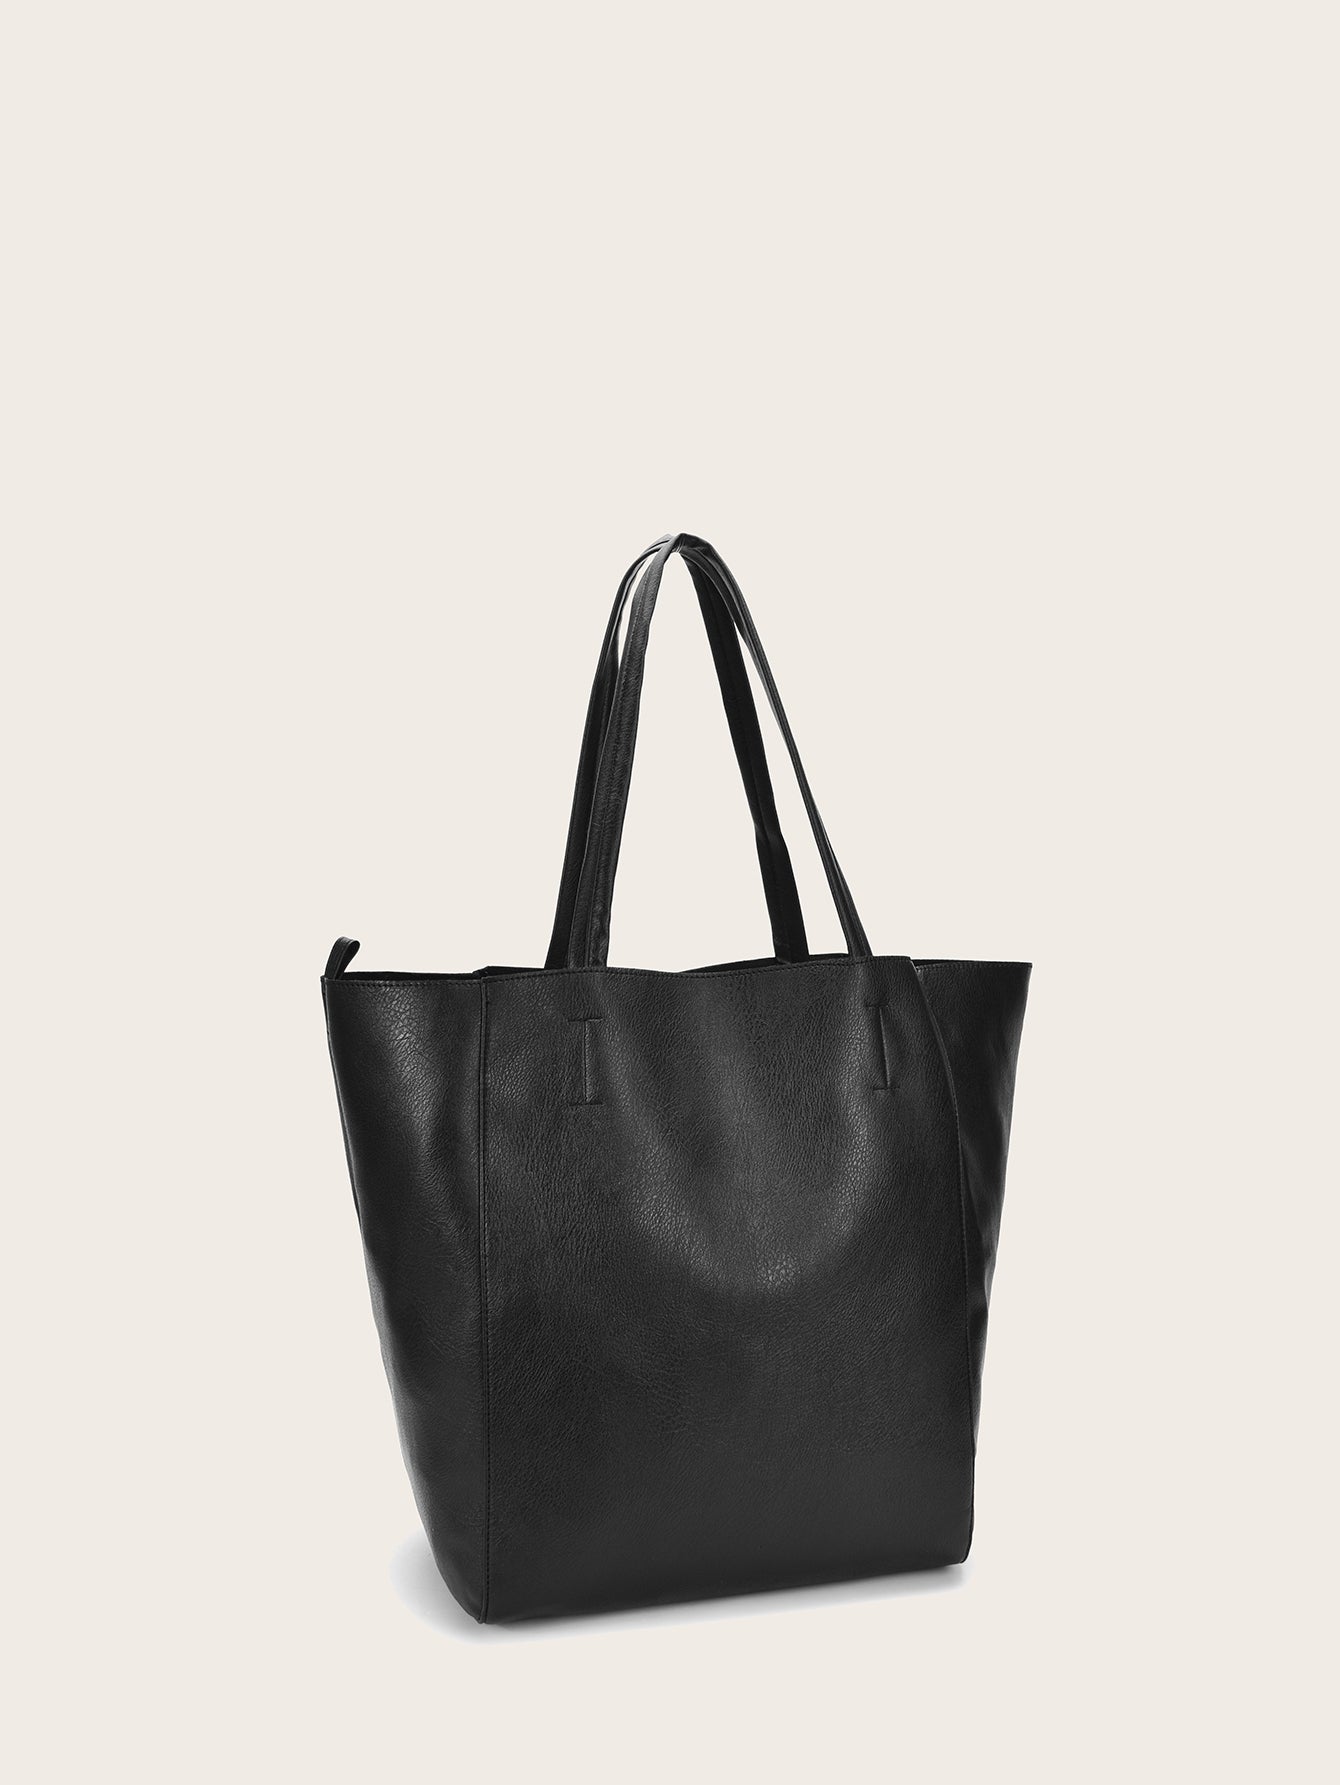 2pcs Women Casual Handbag Shoulder Bag Tote Wallet Bag Sai Feel